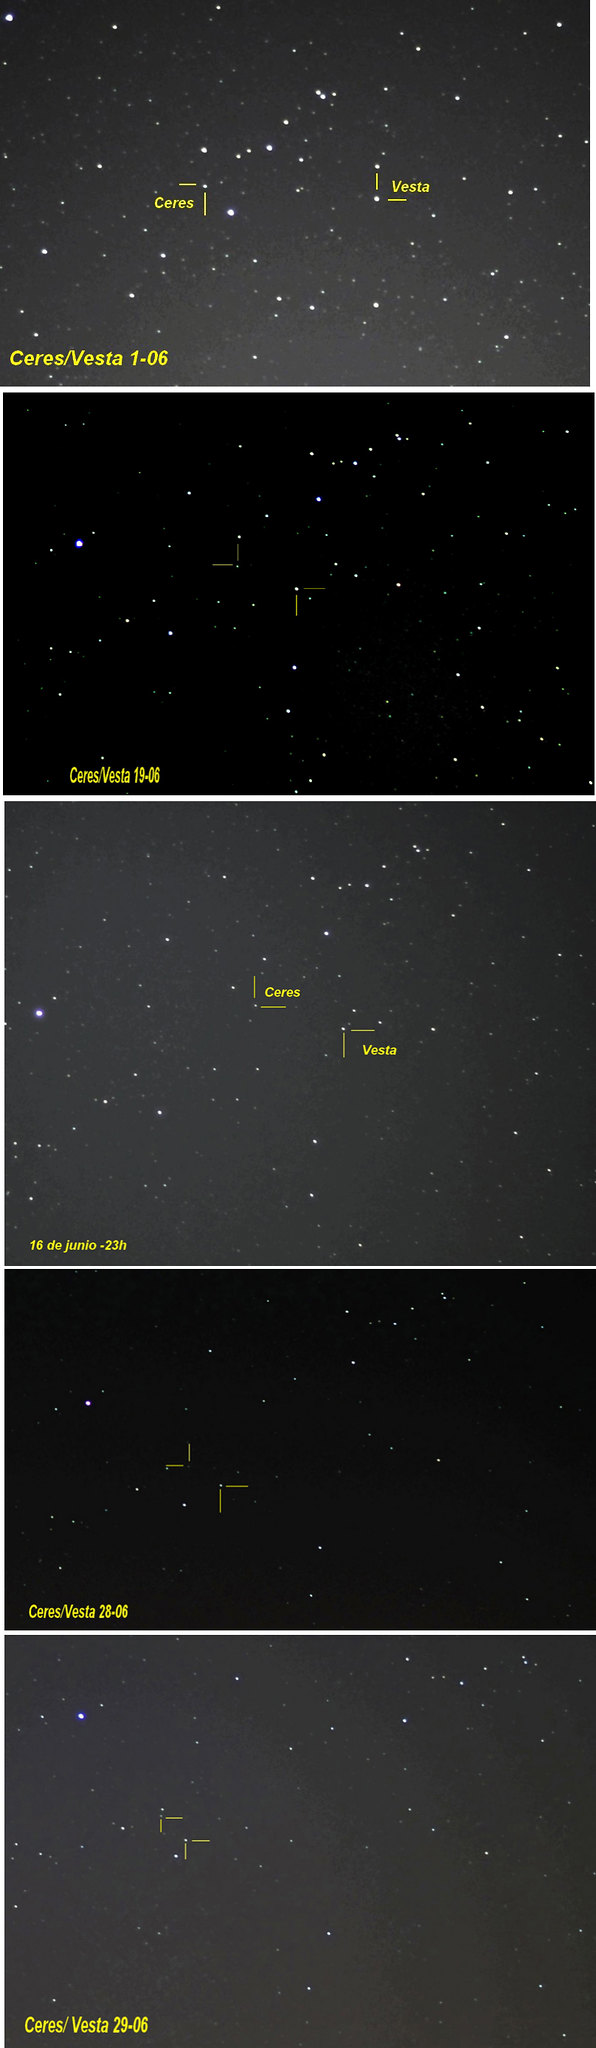 Dawn - Mission autour de Cérès - Page 16 14570838523_34d307c3de_k